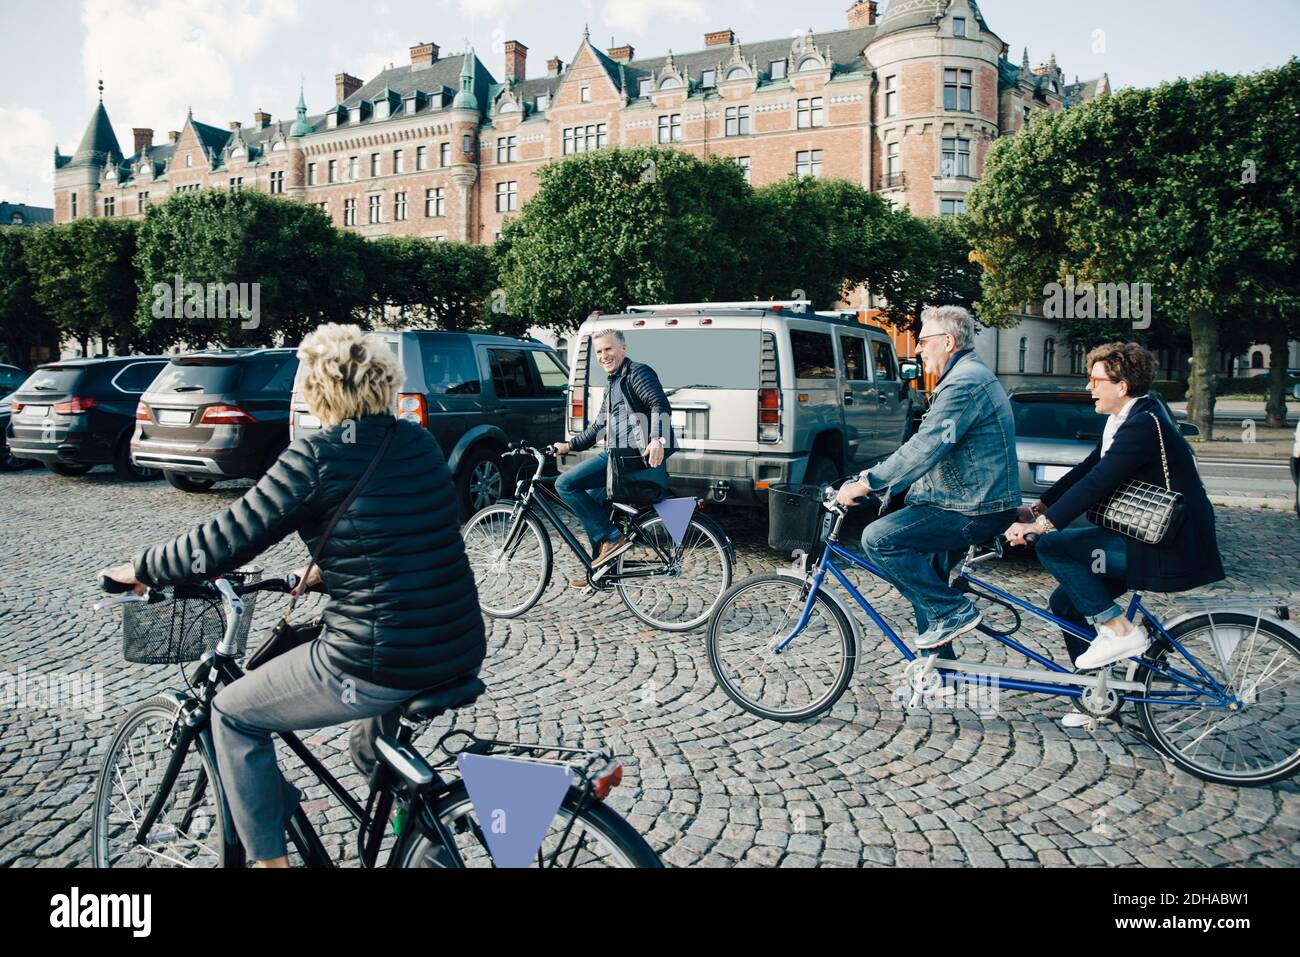 Alegres Hombres Mayores En Una Bicicleta Tándem Imagen de archivo - Imagen  de paseo, lifestyle: 197799215